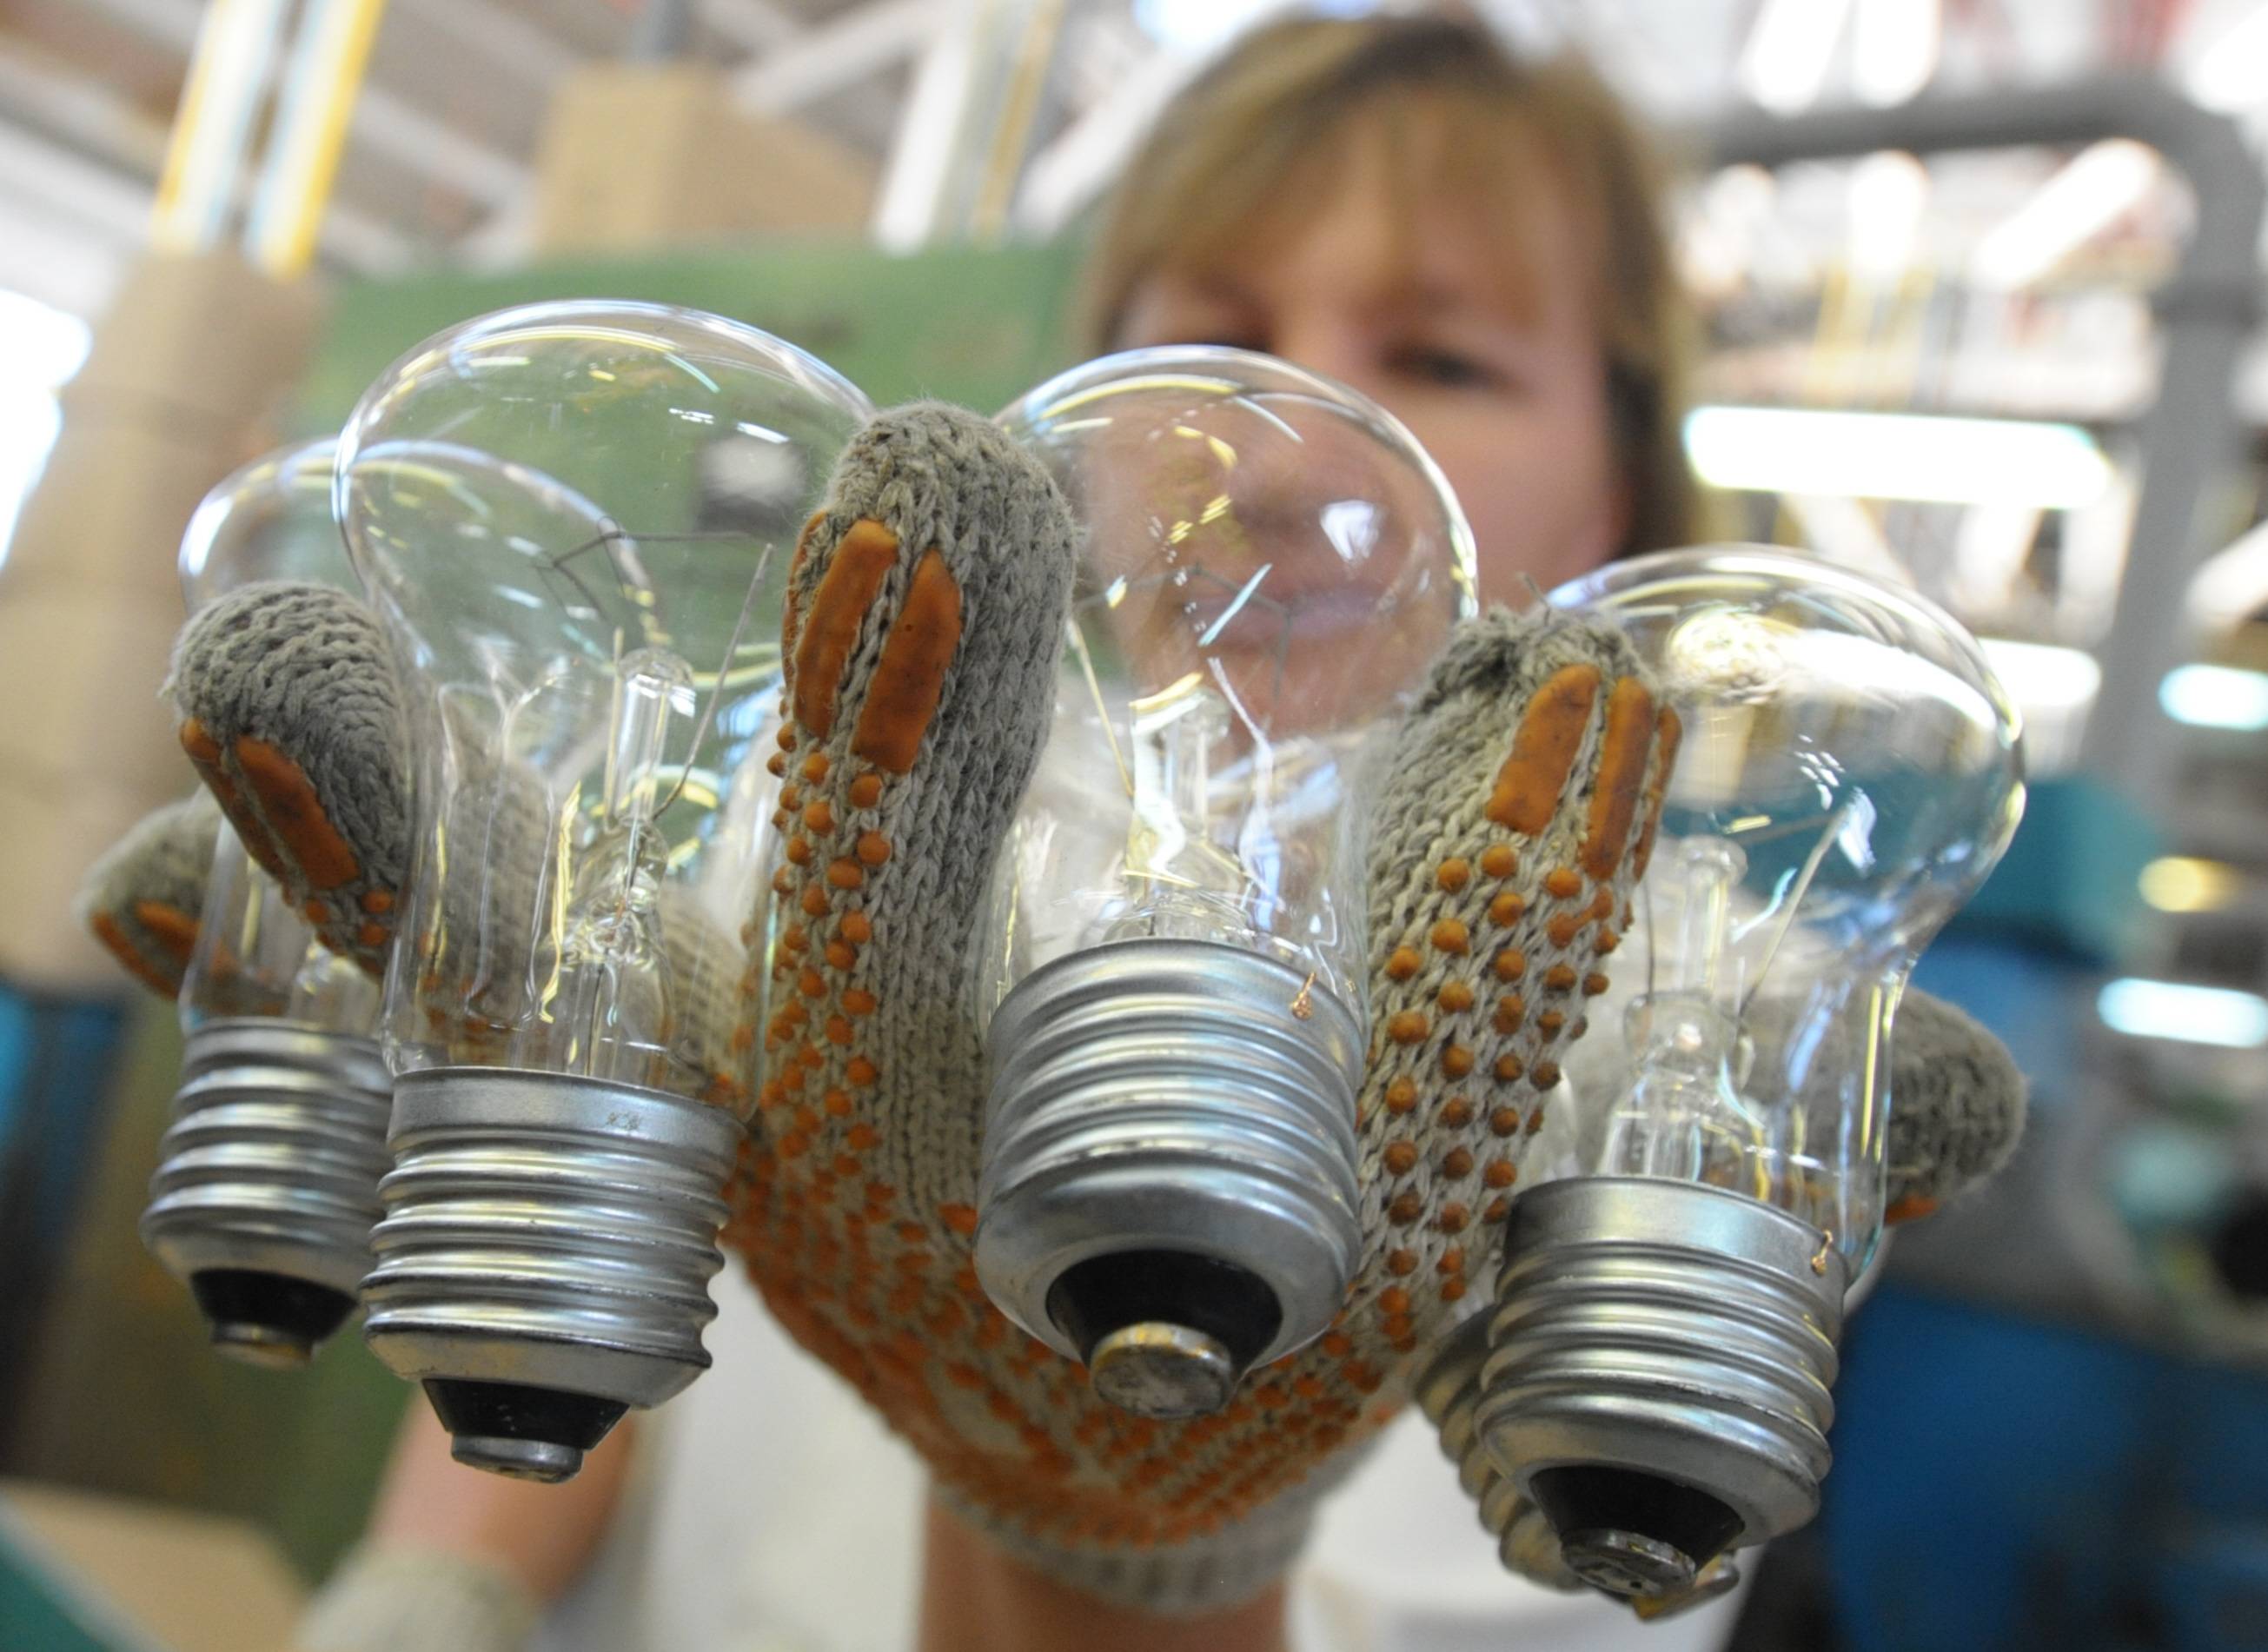 Устройство и принцип работы энергосберегающей лампы